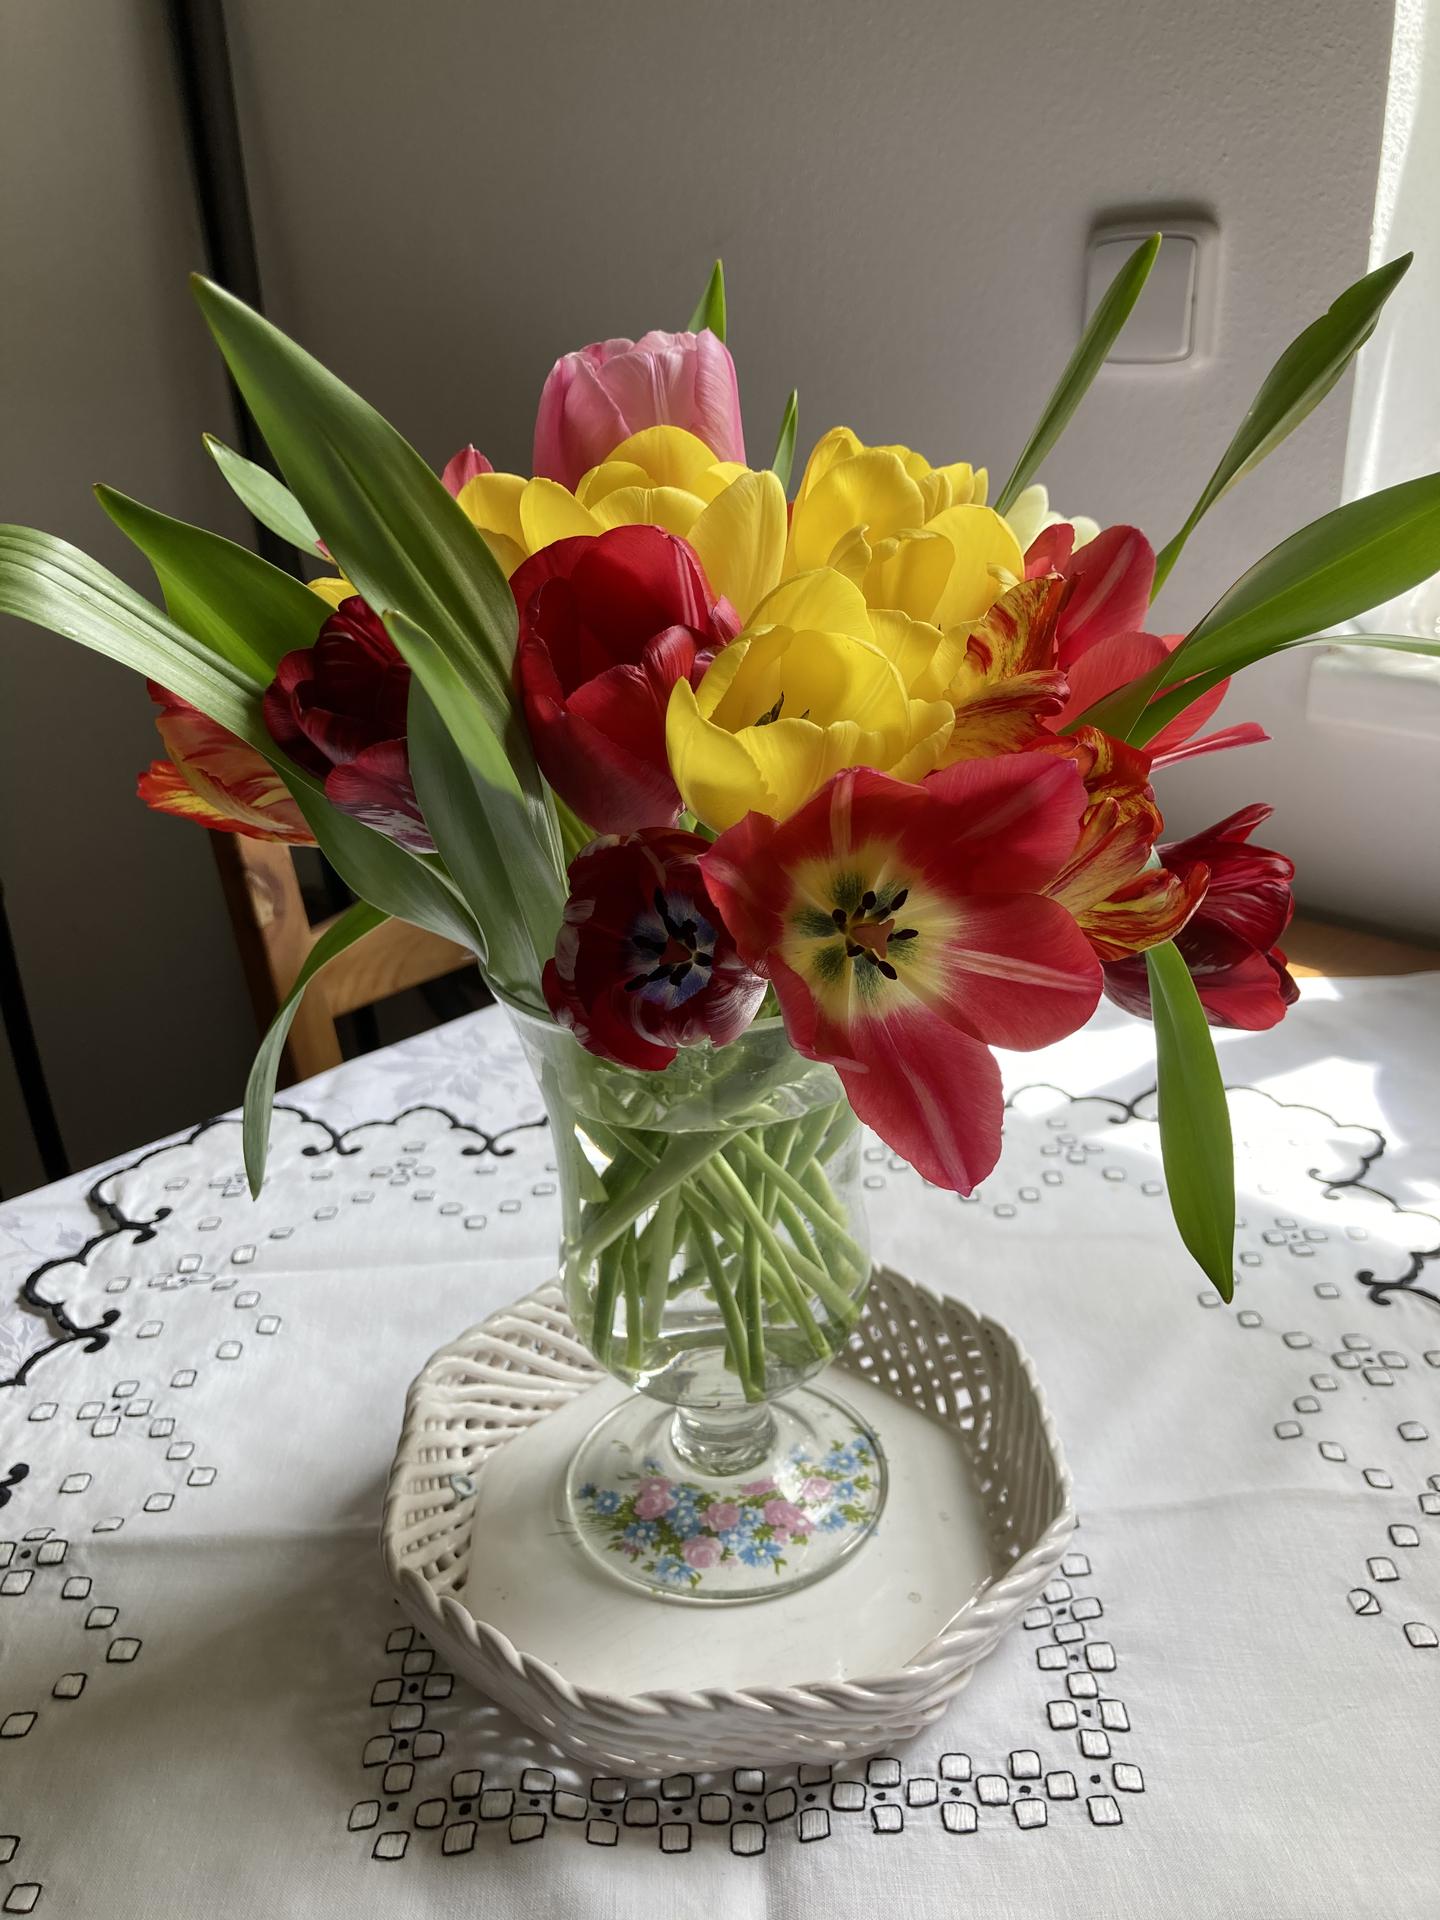 2021 🍀🤞🏻 - Posledni tulipany ze zahrady